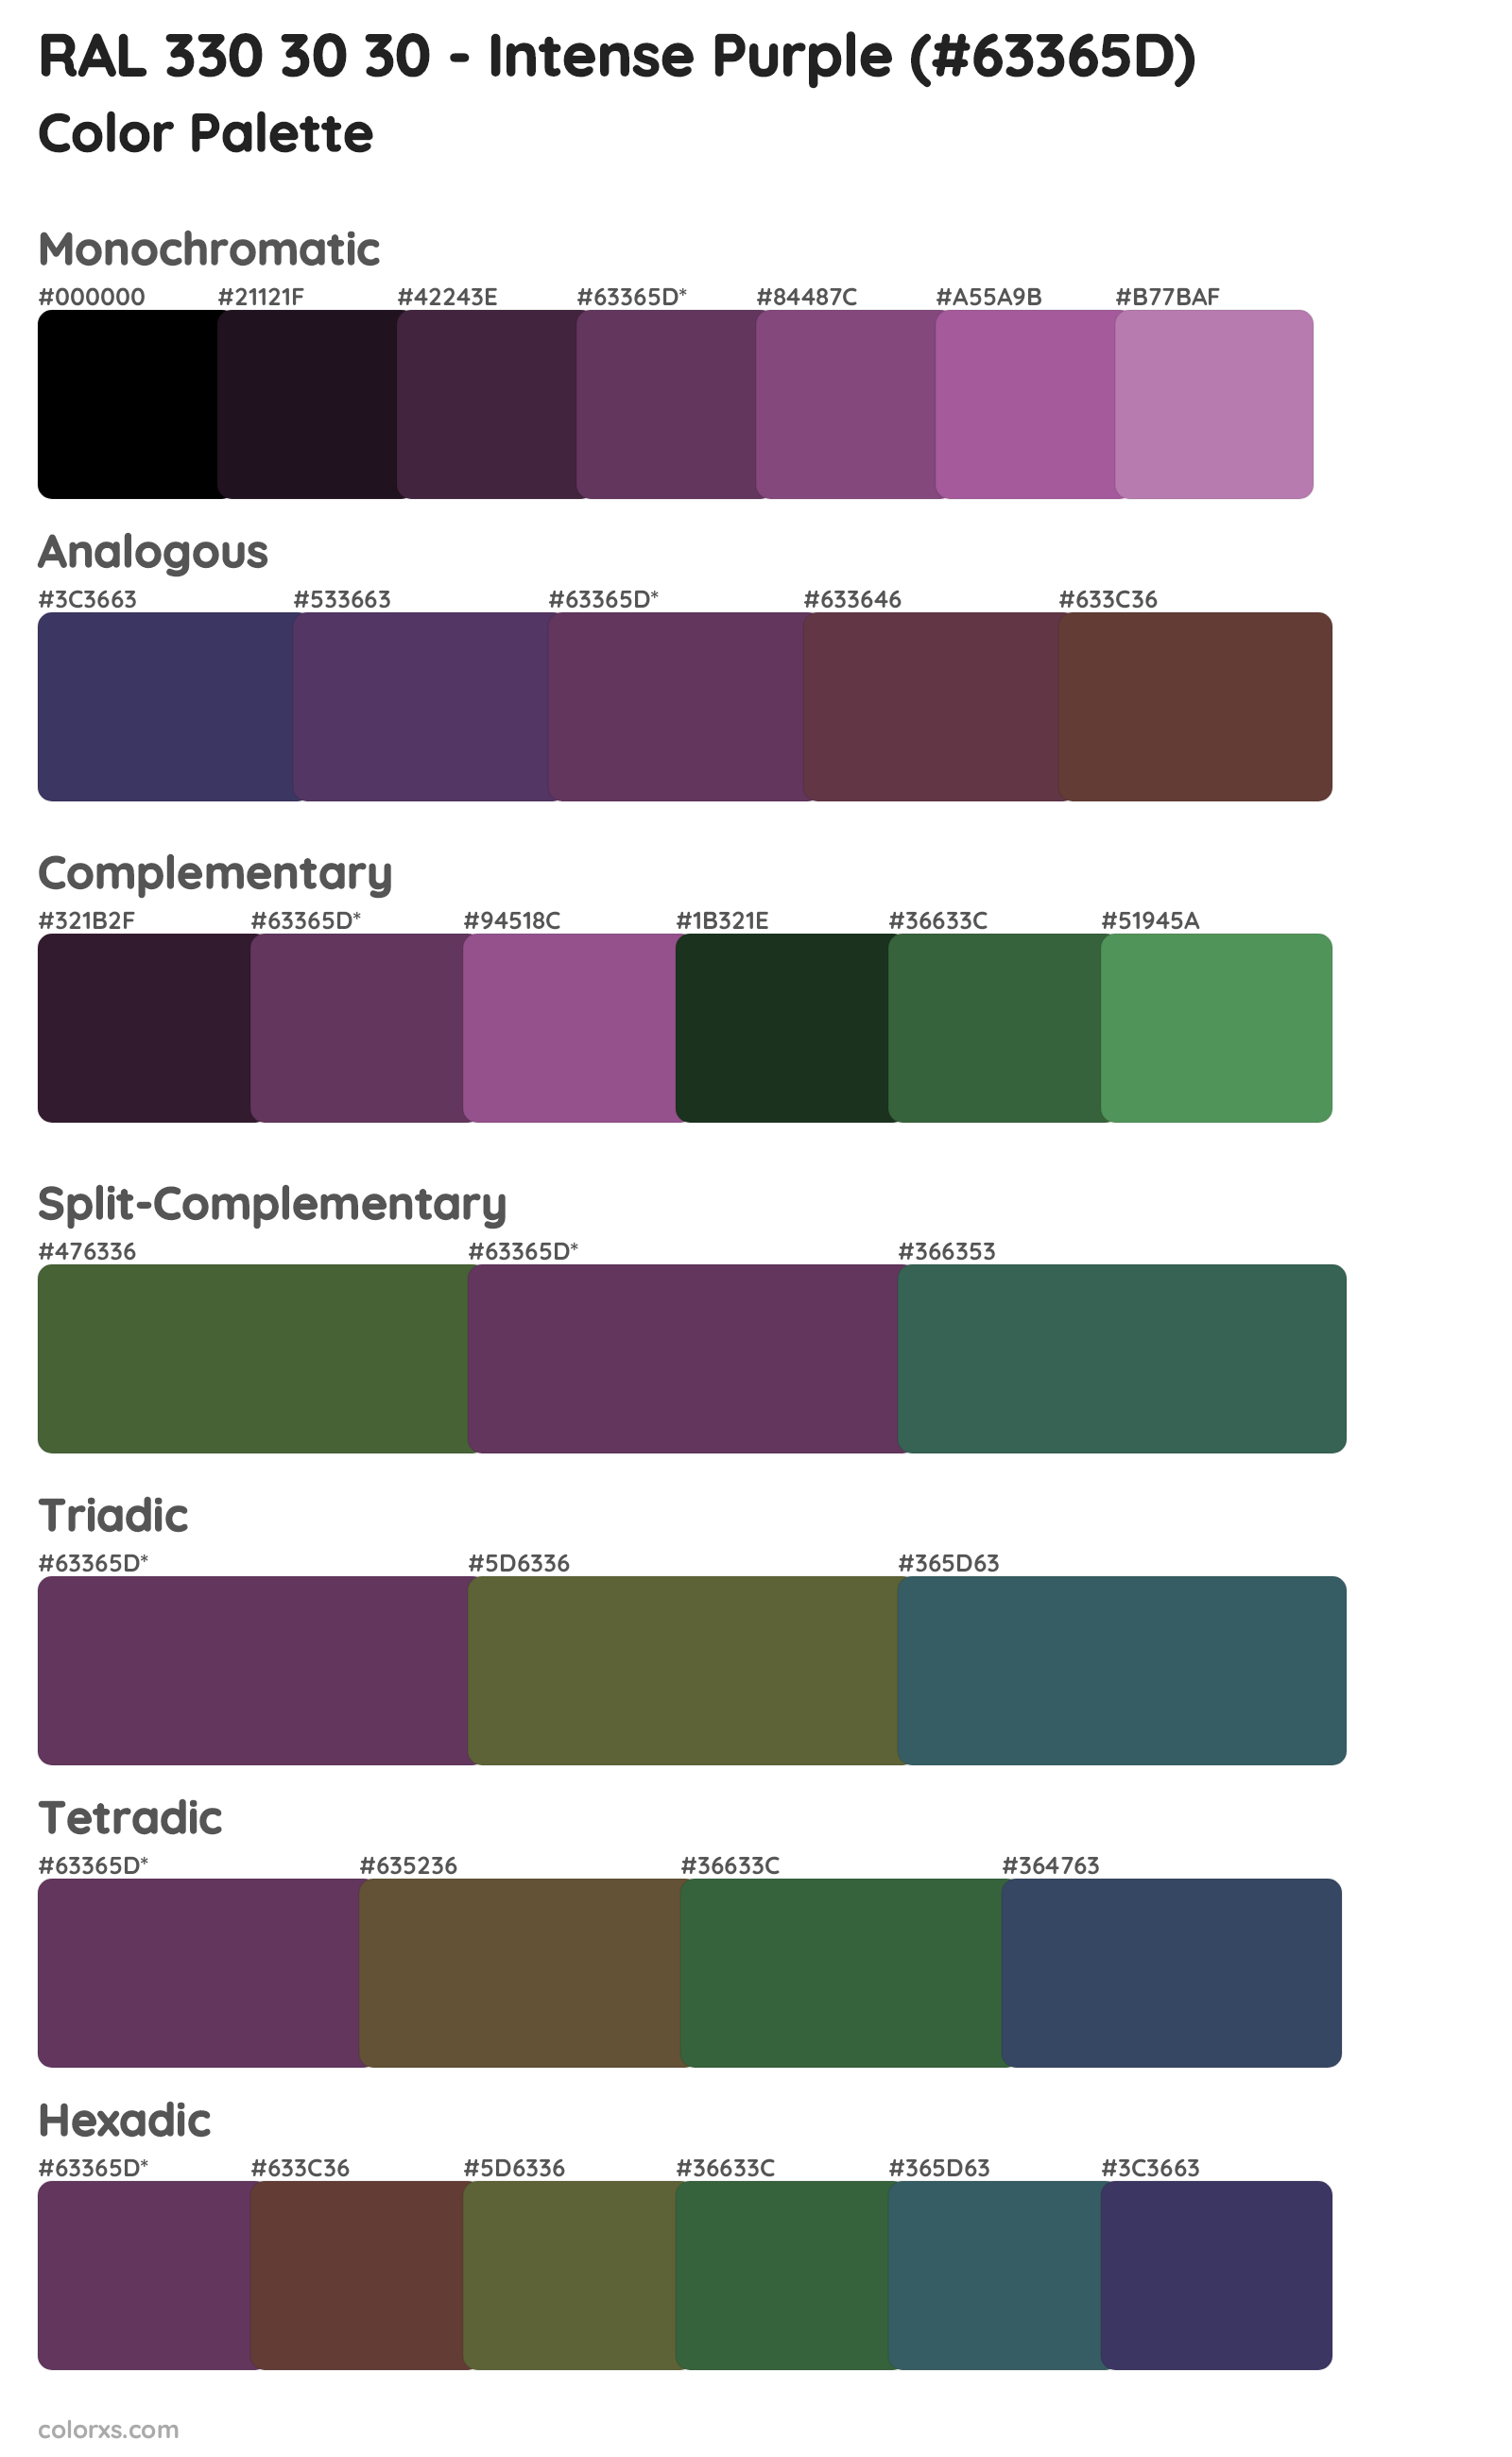 RAL 330 30 30 - Intense Purple Color Scheme Palettes